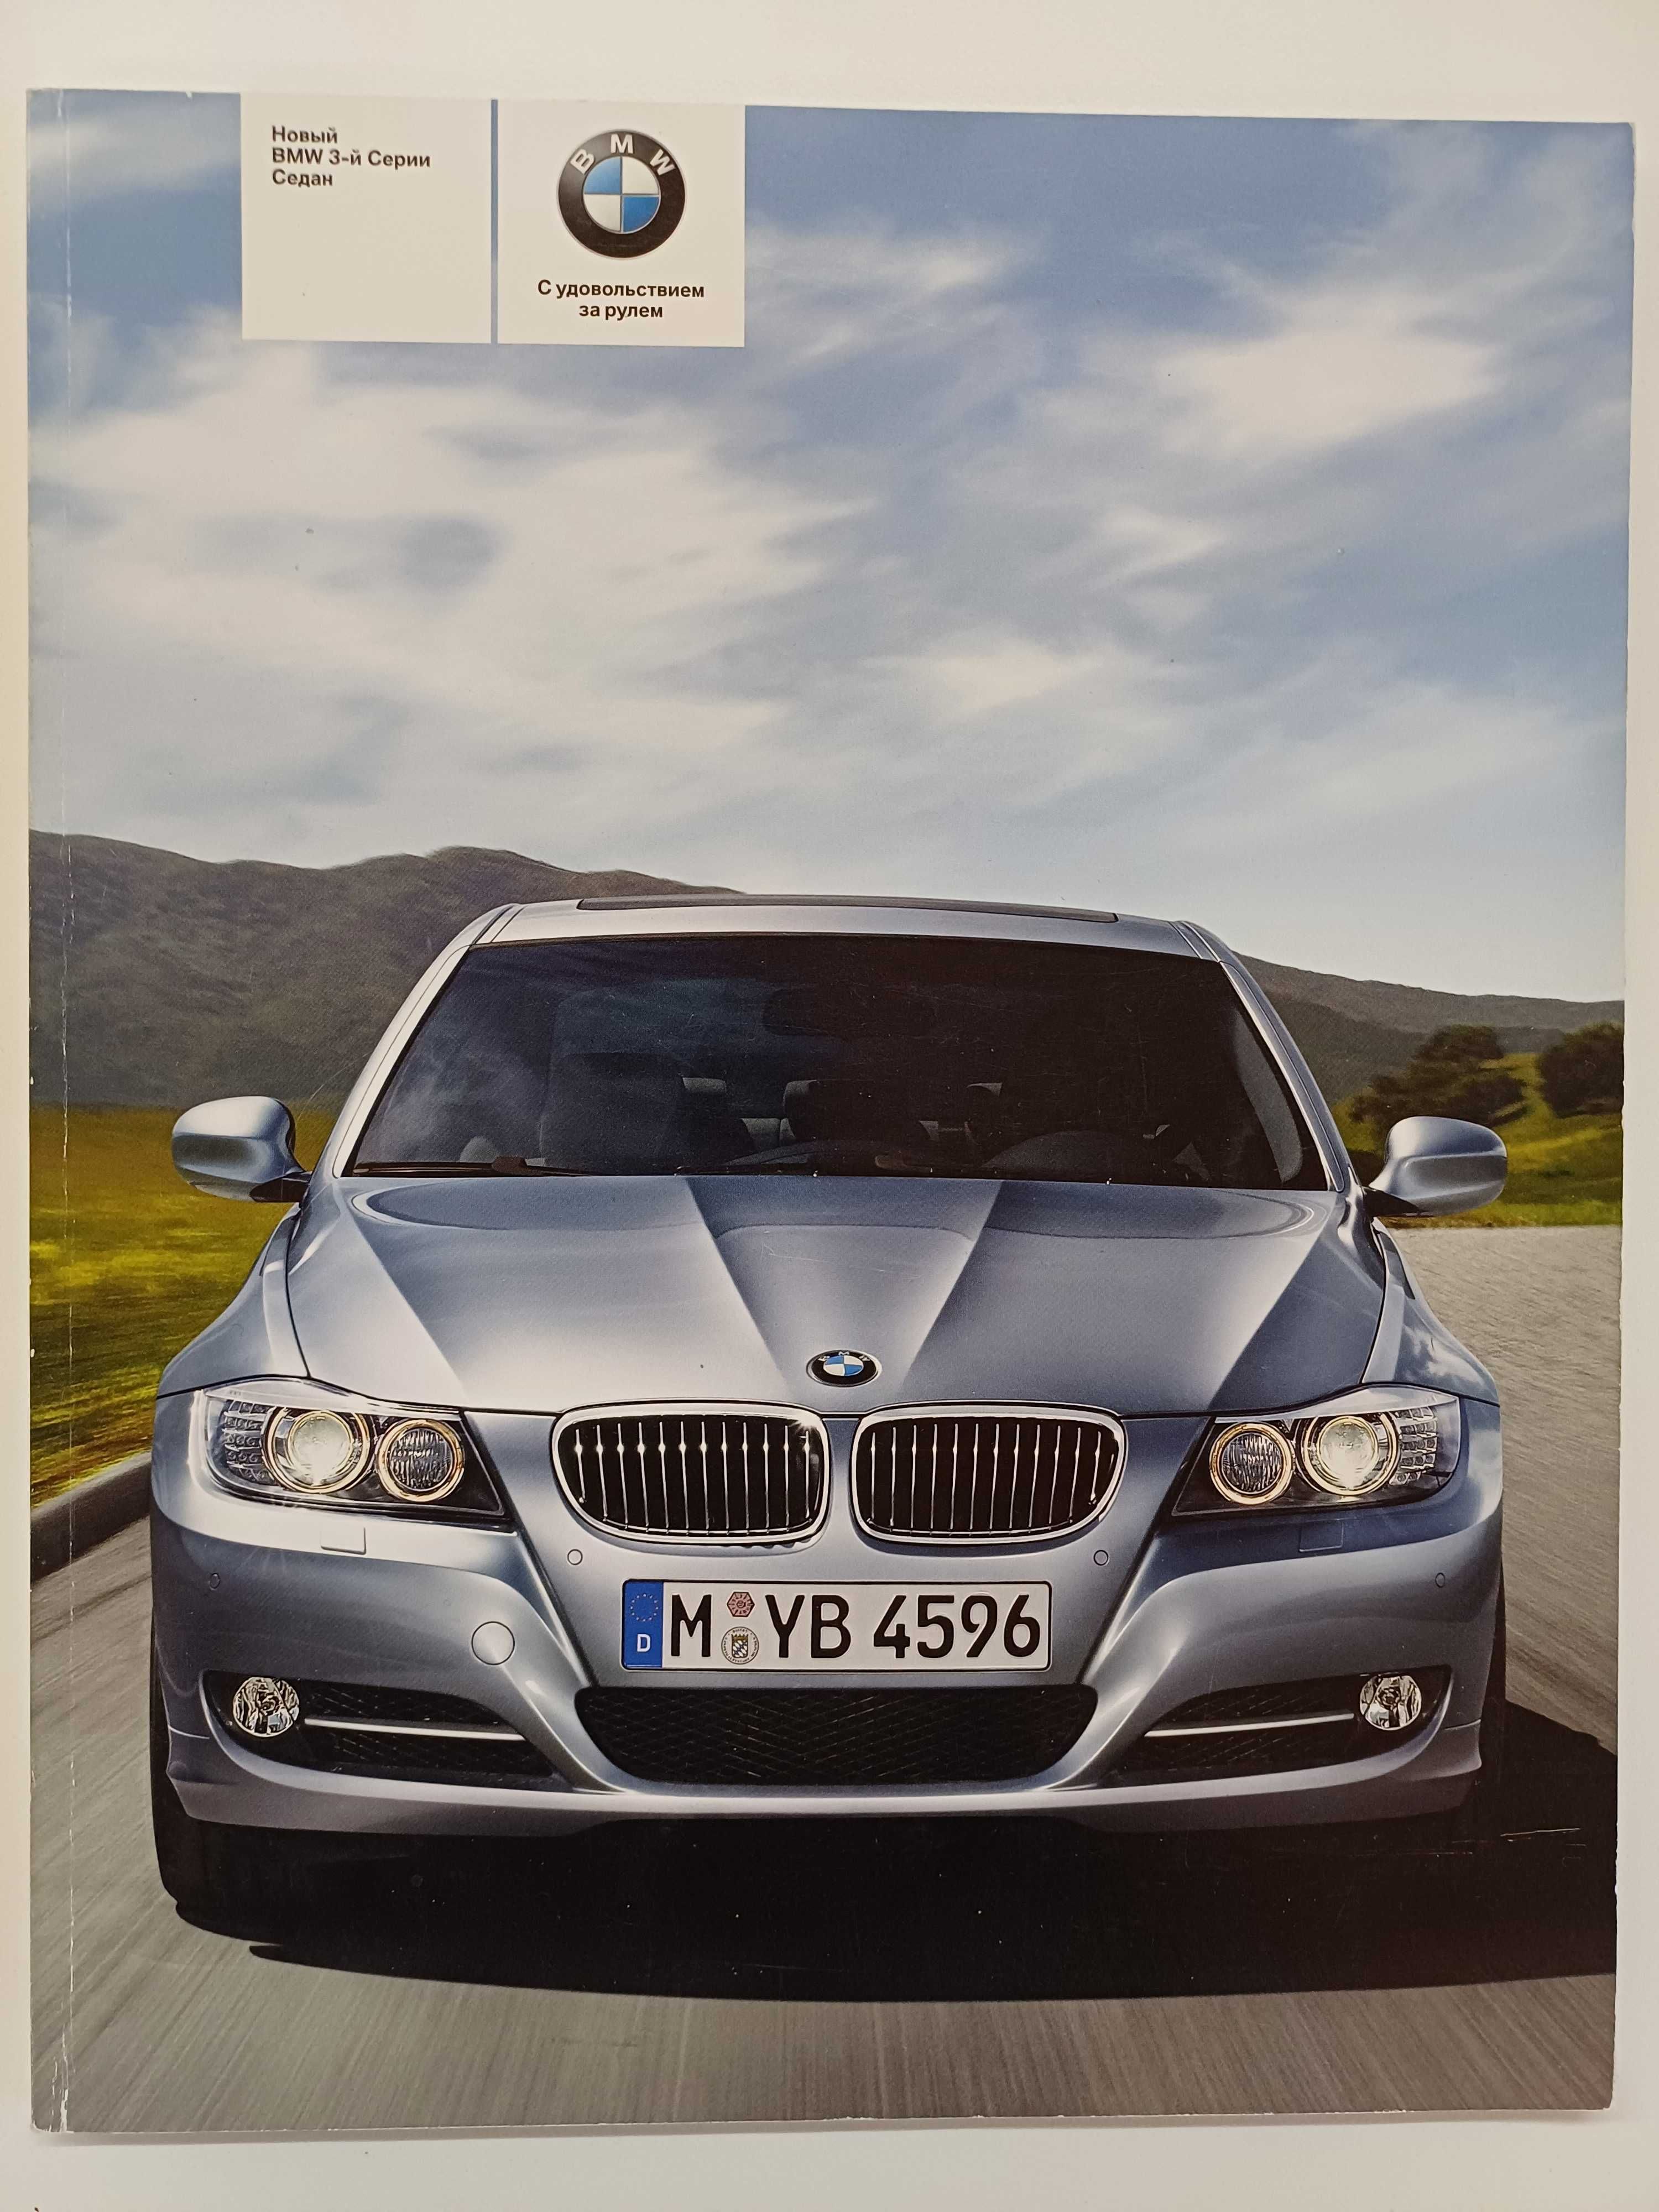 Каталог автомобиля BMW 3-серии Е90 LCI седан 2008-2011